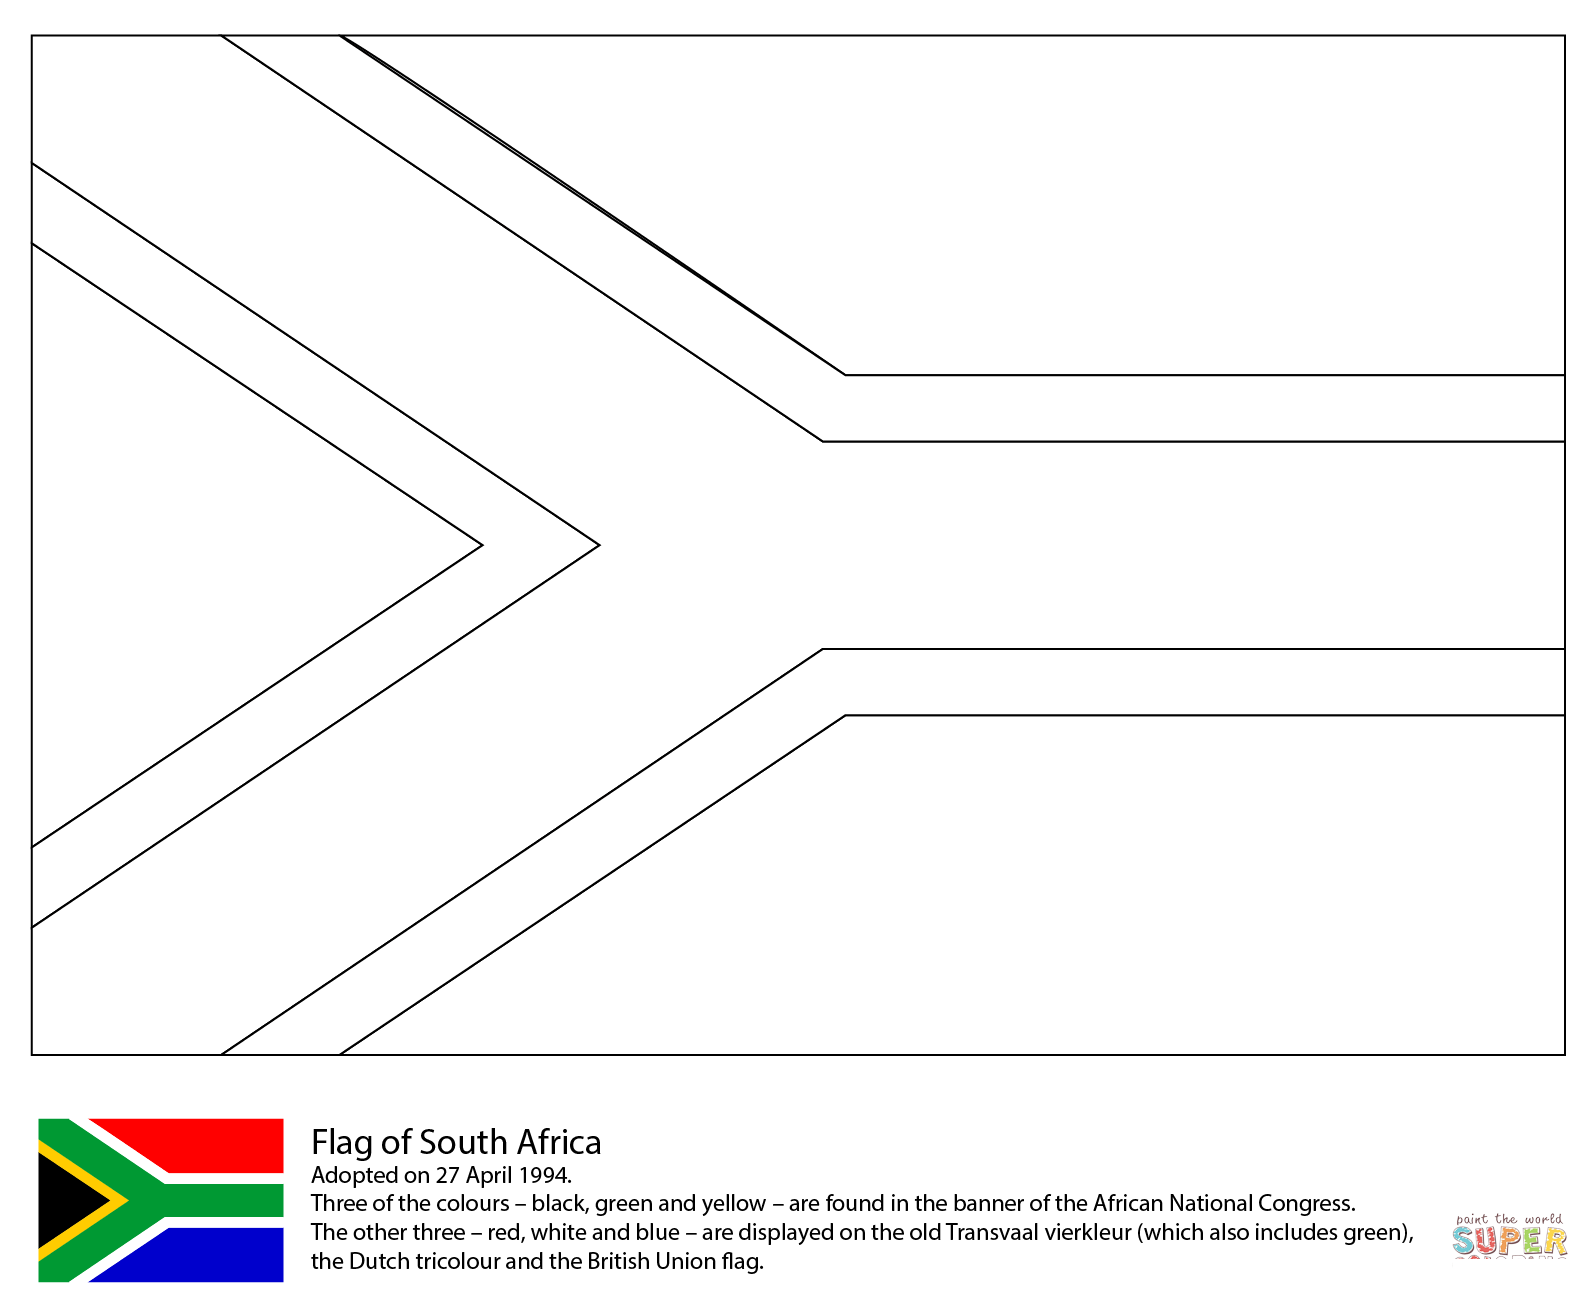 Pietų Afrikos vėliava